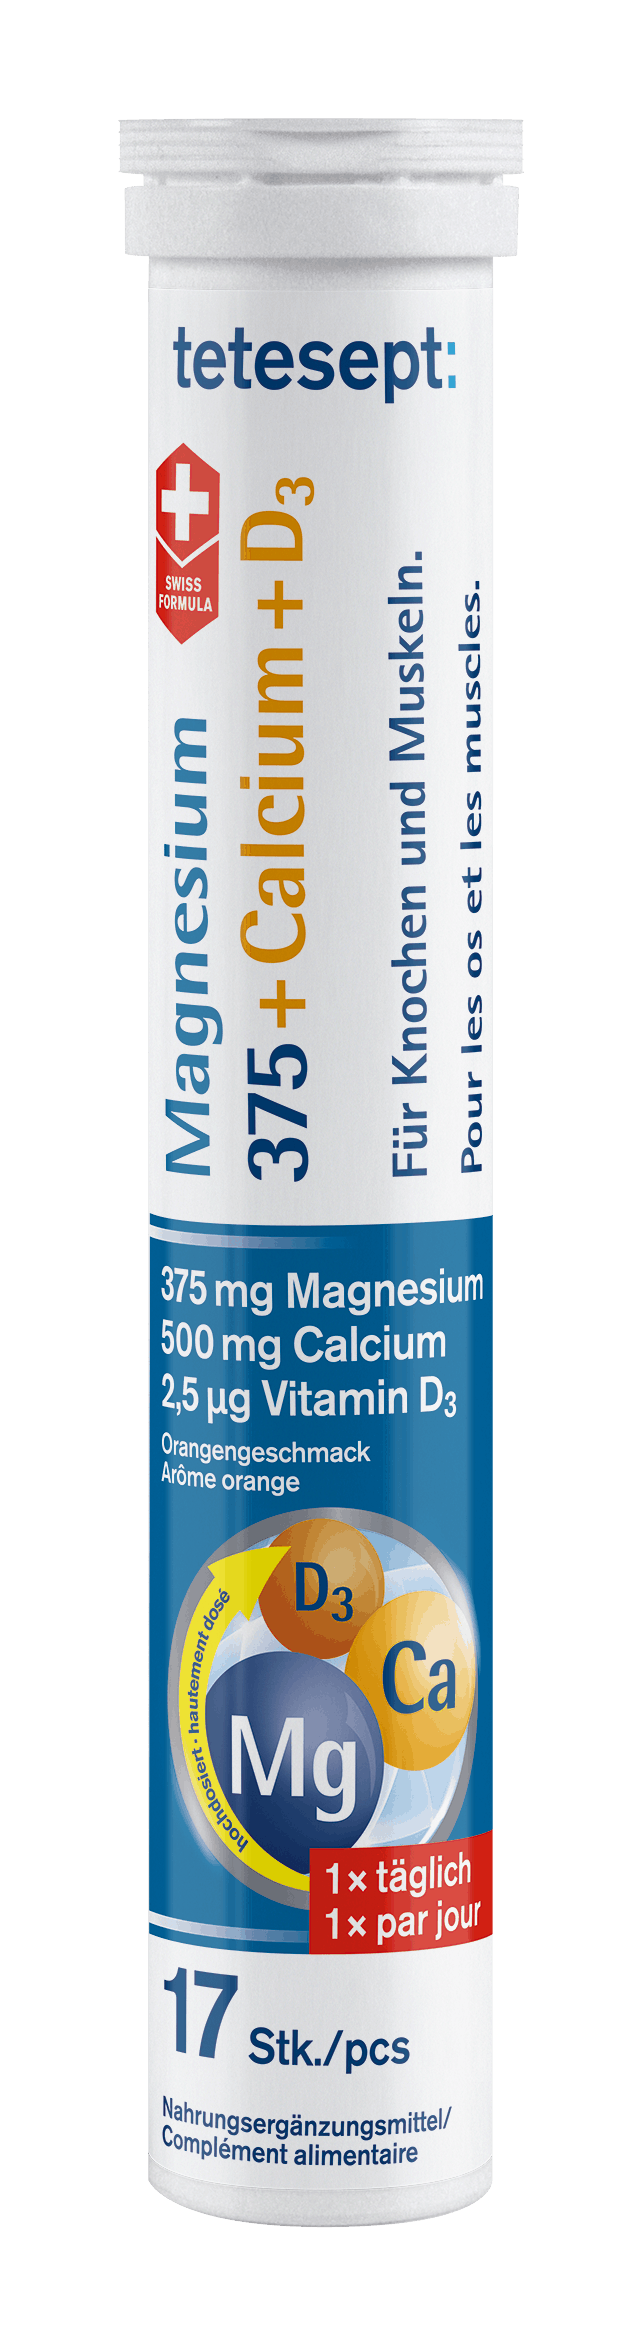 tetesept Magnesium 375 Calcium + D3 Brausetabletten